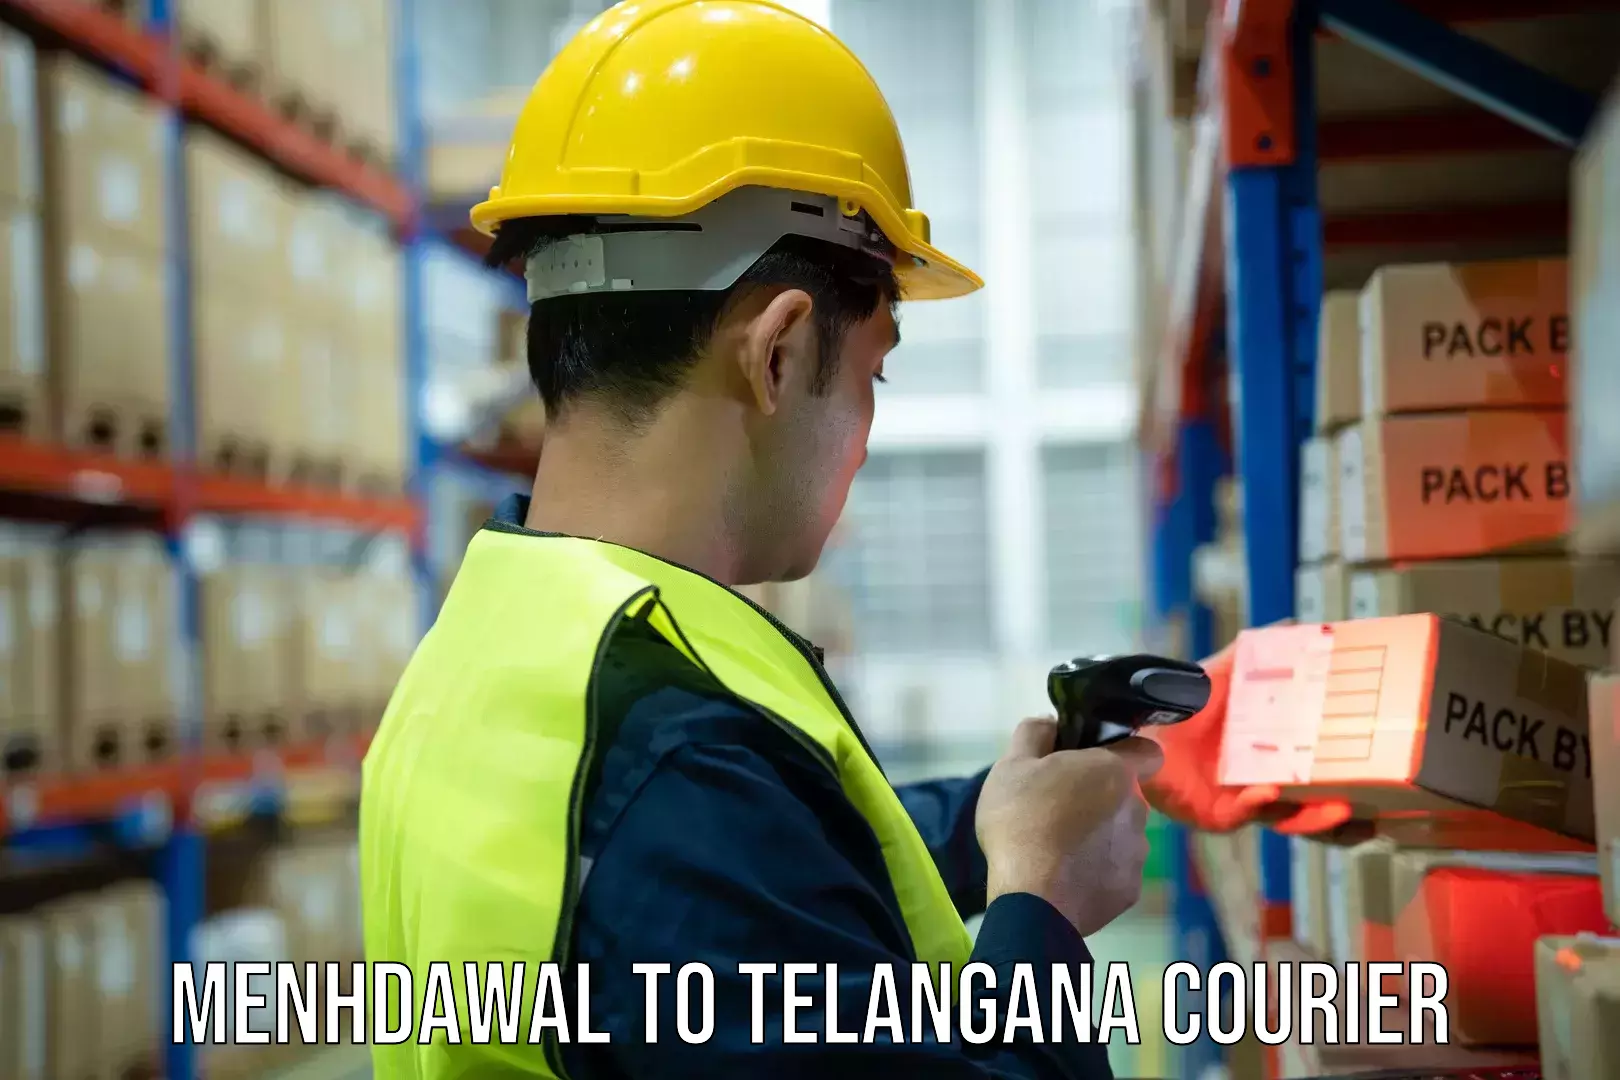 Delivery service partnership Menhdawal to Telangana